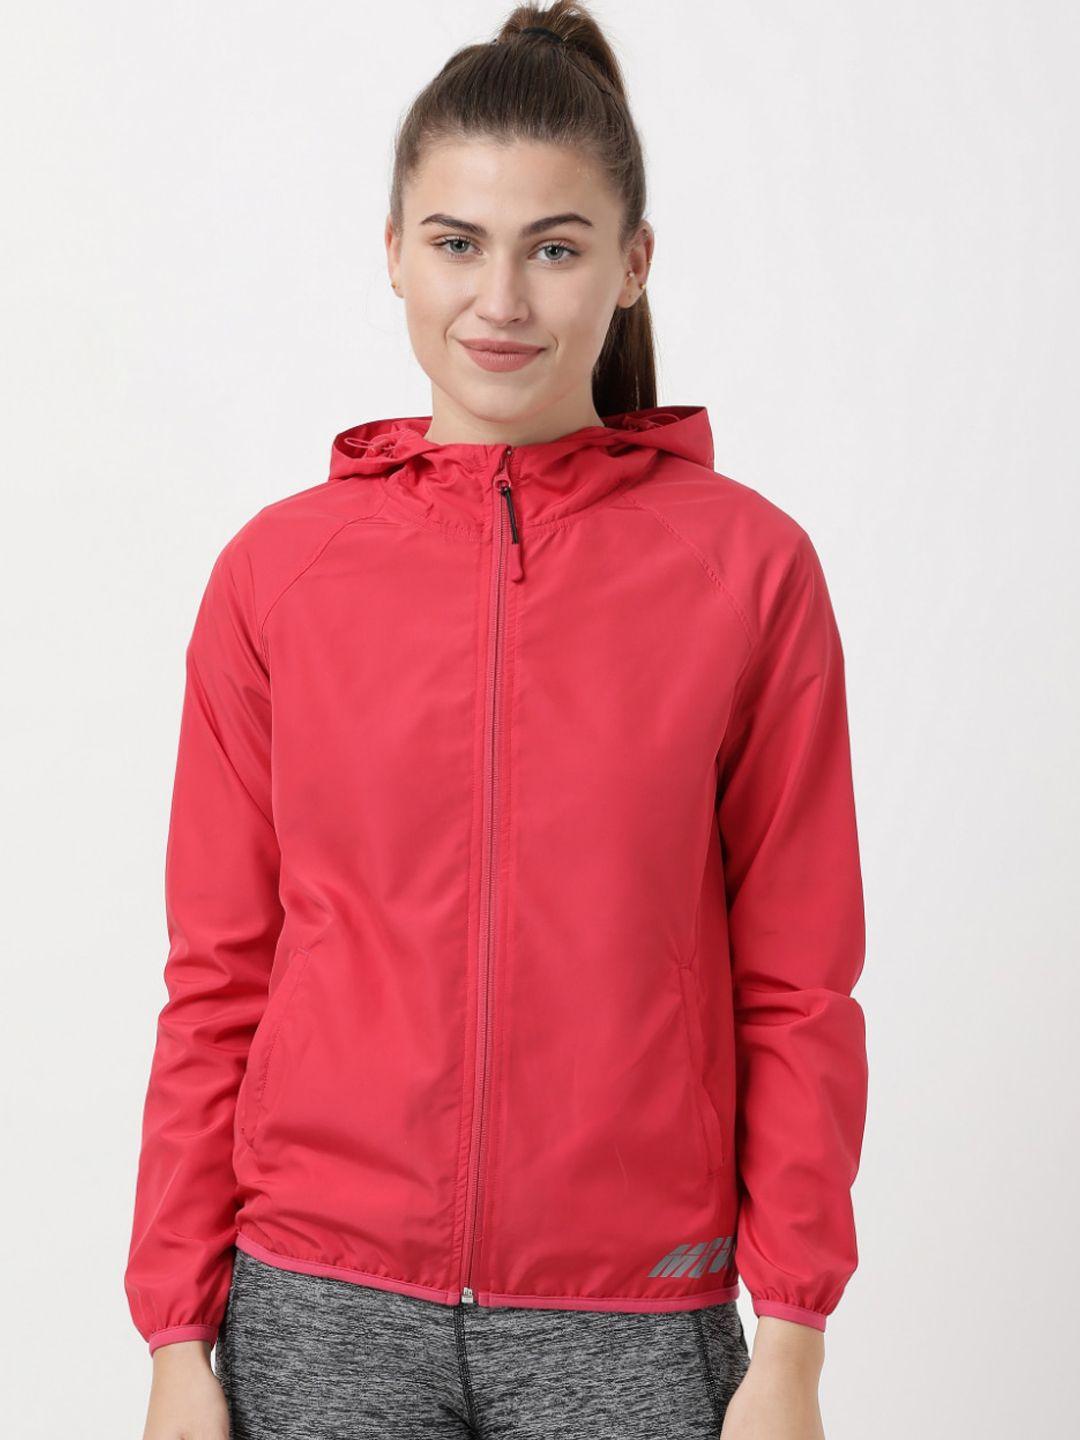 jockey women pink sporty jacket